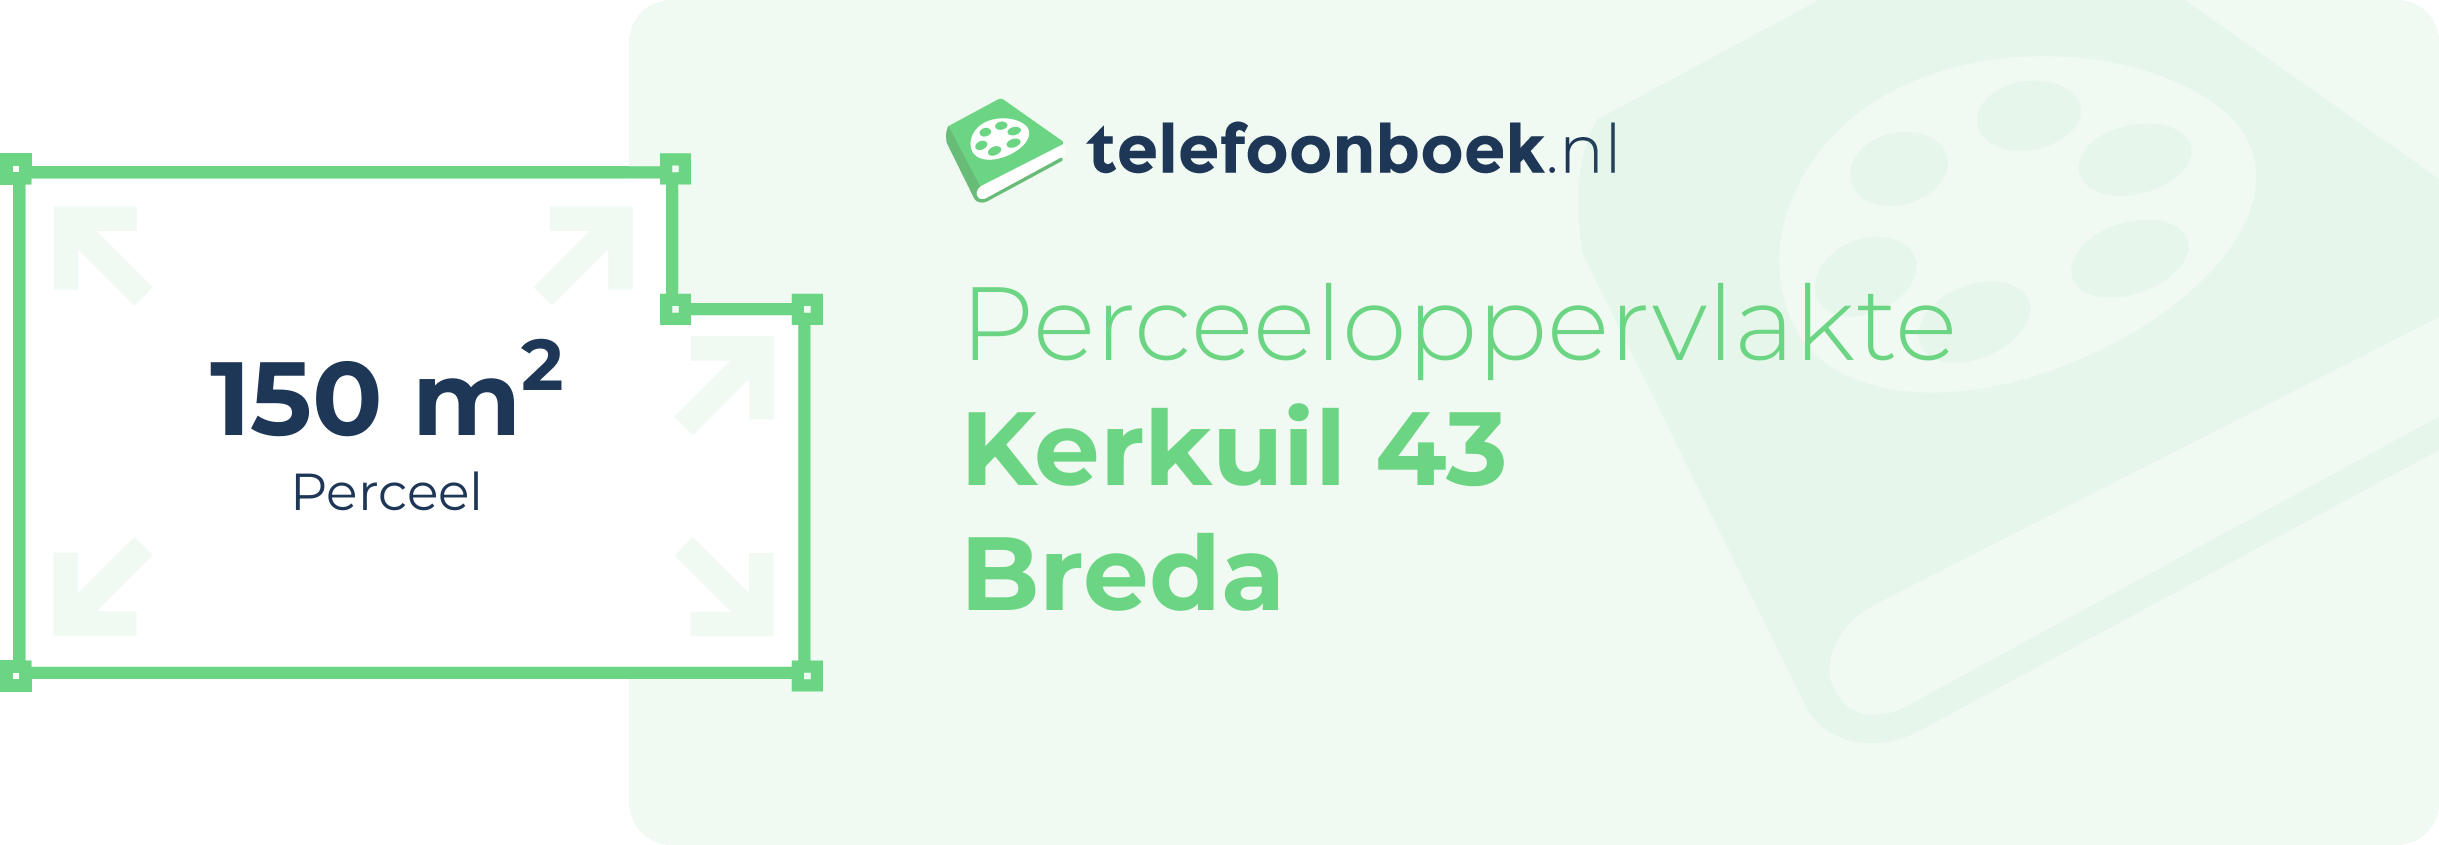 Perceeloppervlakte Kerkuil 43 Breda